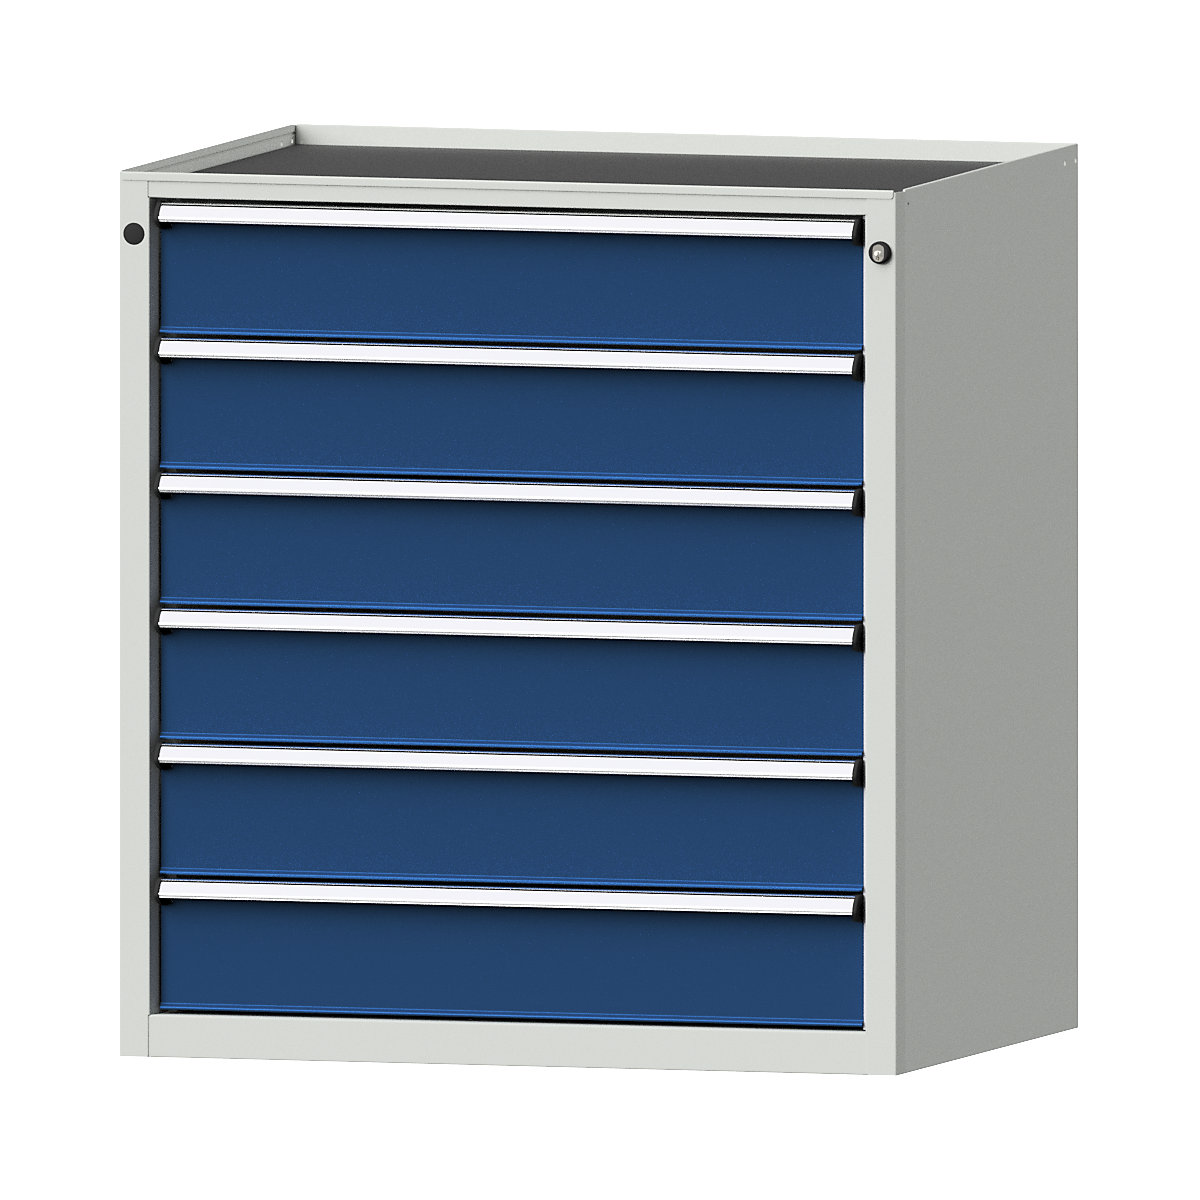 Zásuvková skříň – ANKE, š x h 910 x 675 mm, nosnost zásuvky 200 kg, 6 zásuvek, výška 980 mm, čelo hořcově modré